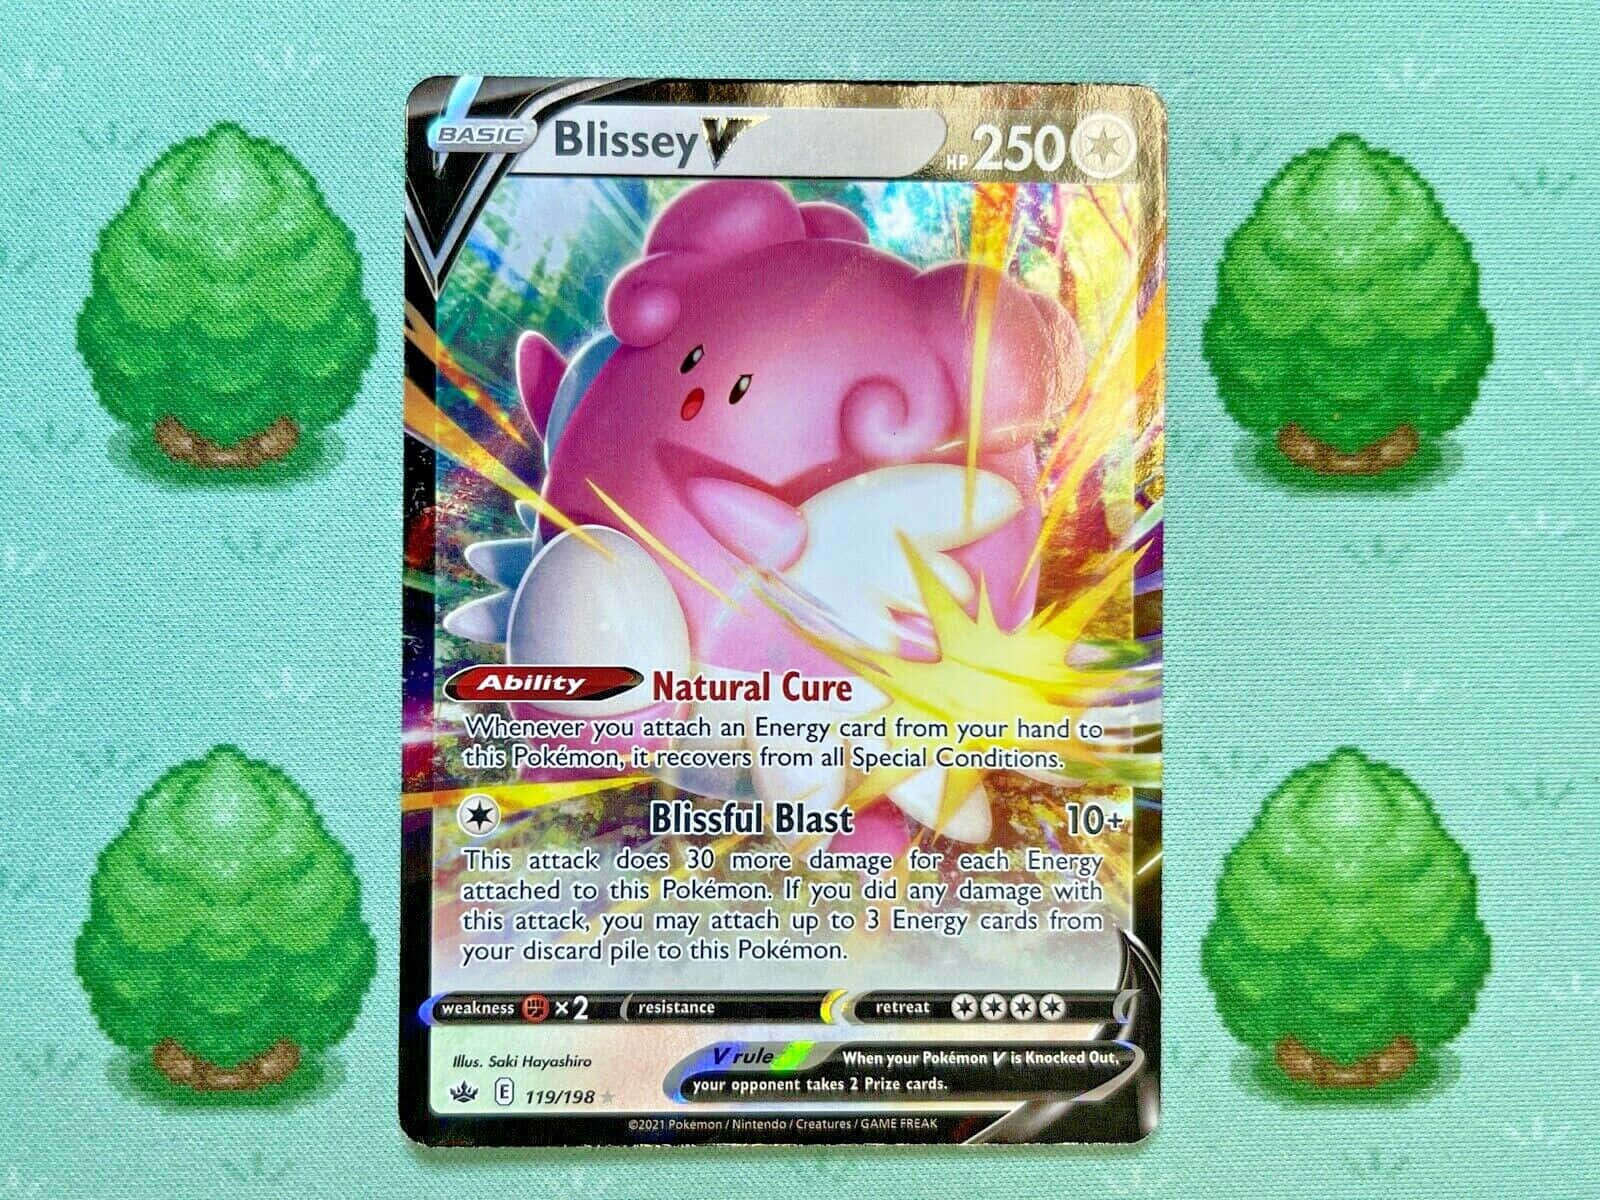 Blisseypokémon Trading Card - Blissey Pokémon-handelskortet. Wallpaper